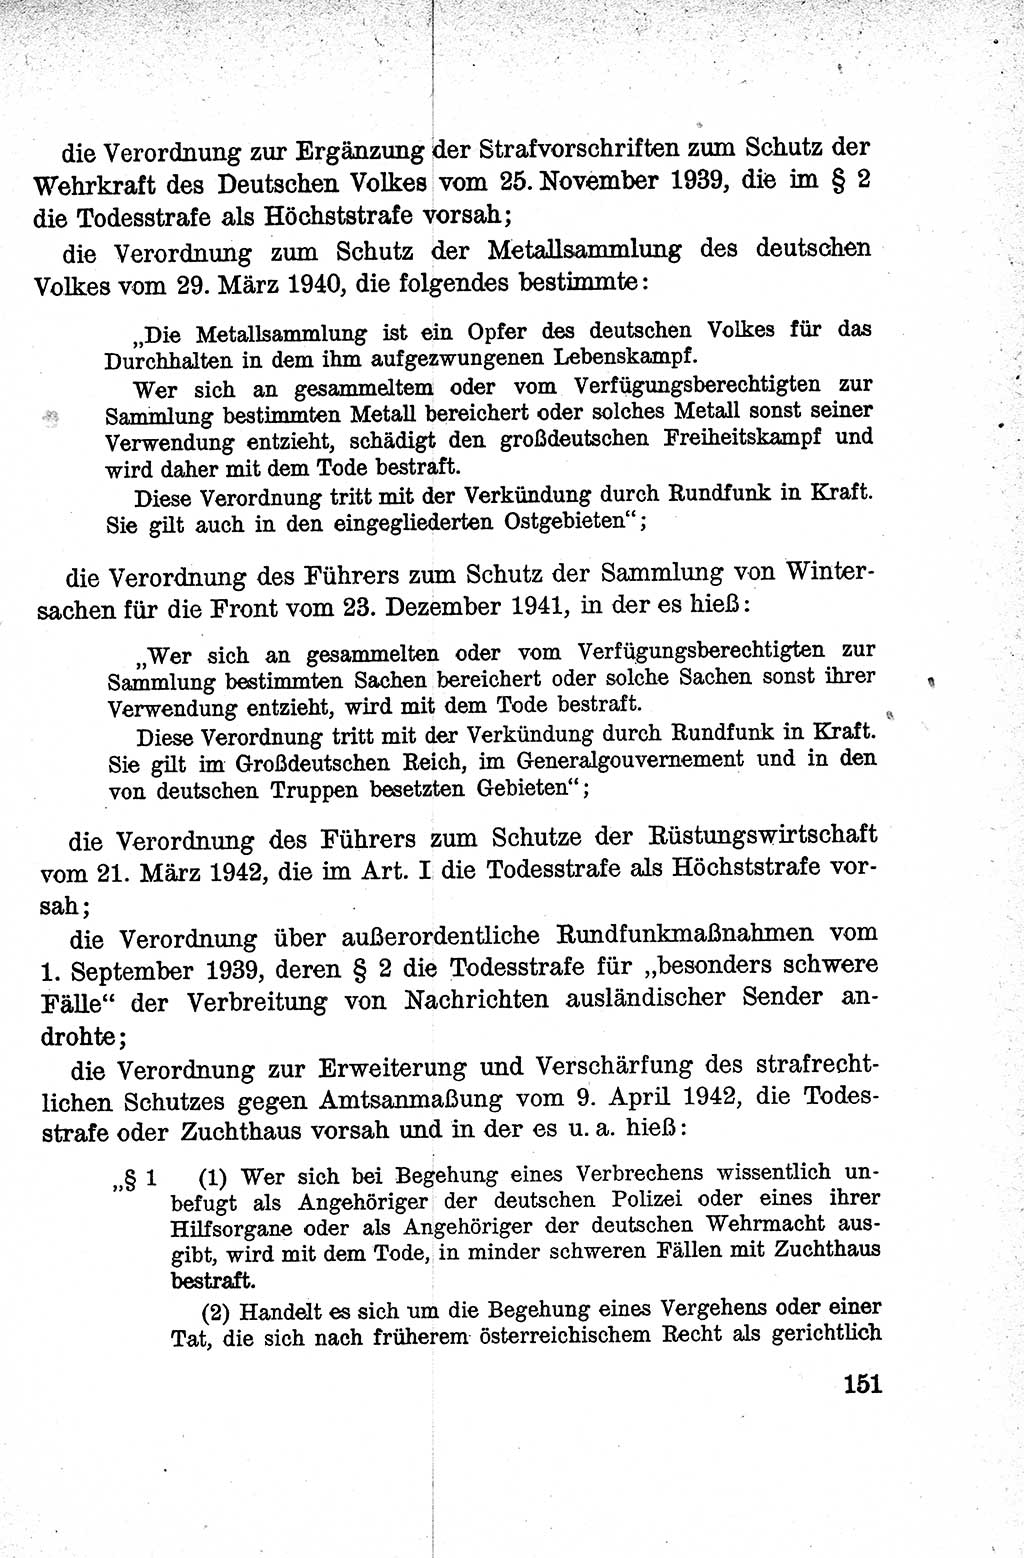 Lehrbuch des Strafrechts der Deutschen Demokratischen Republik (DDR), Allgemeiner Teil 1959, Seite 151 (Lb. Strafr. DDR AT 1959, S. 151)